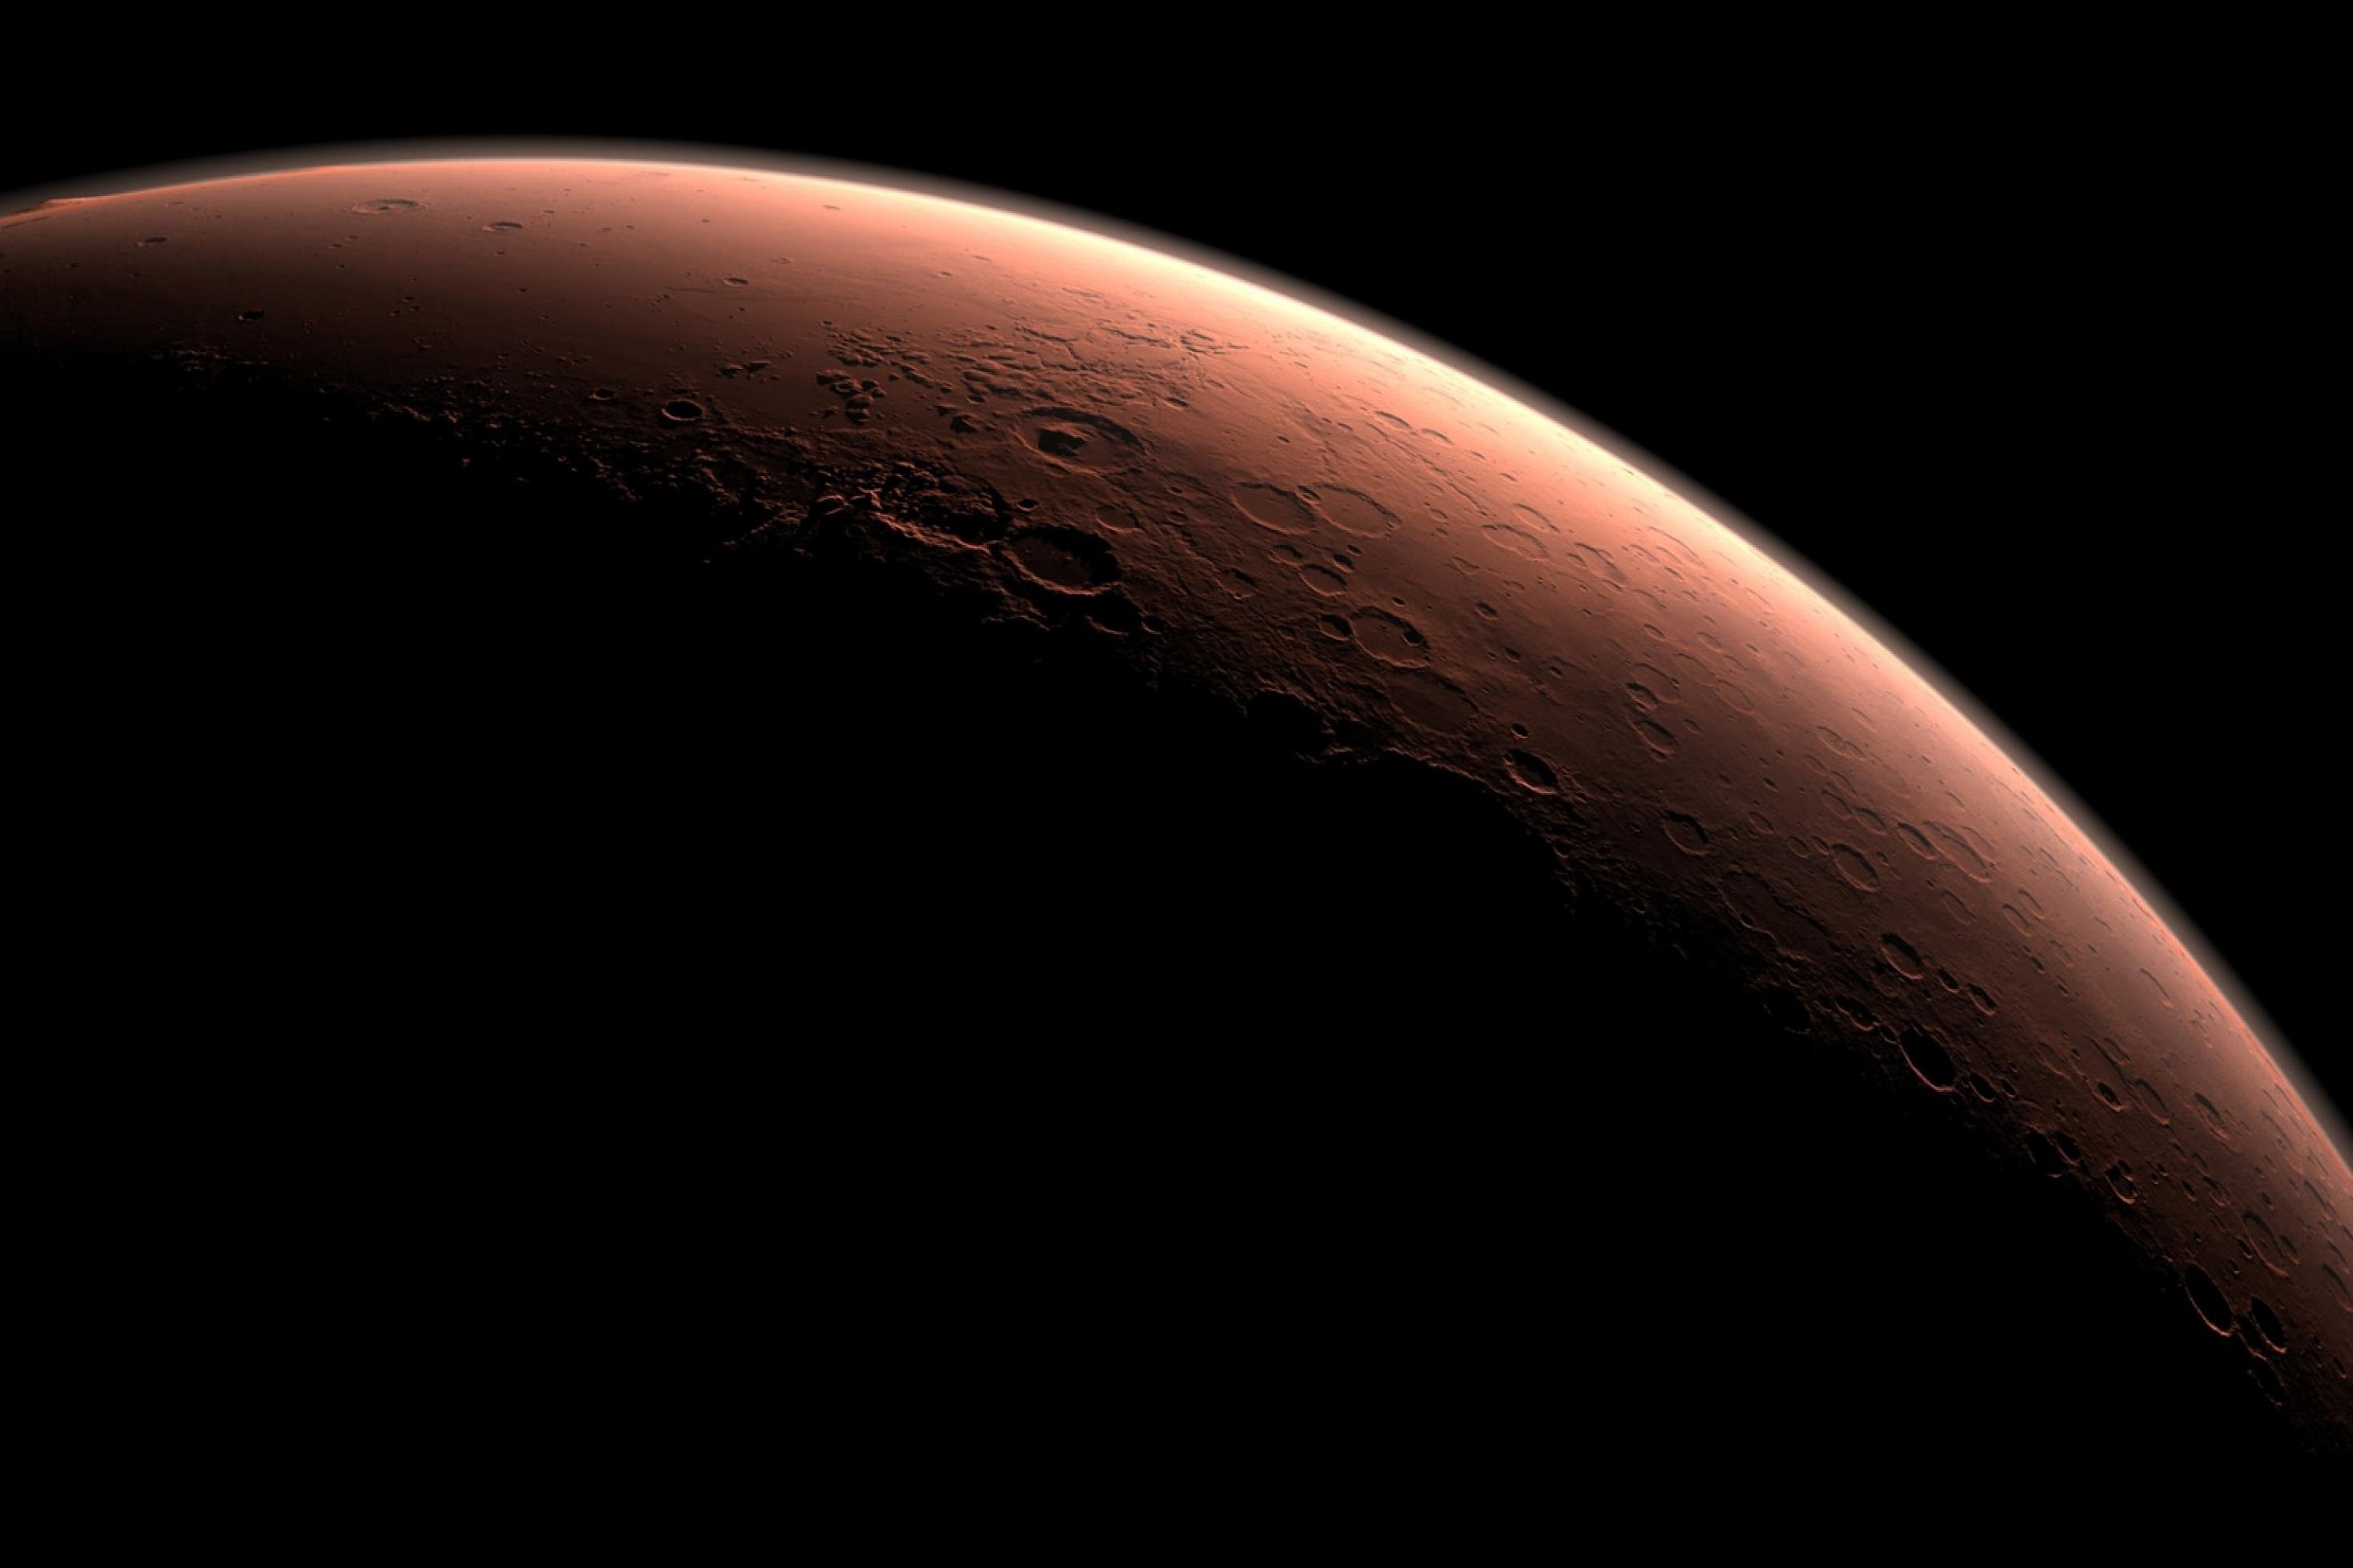 Grafik von Marssichel im Gegenlicht